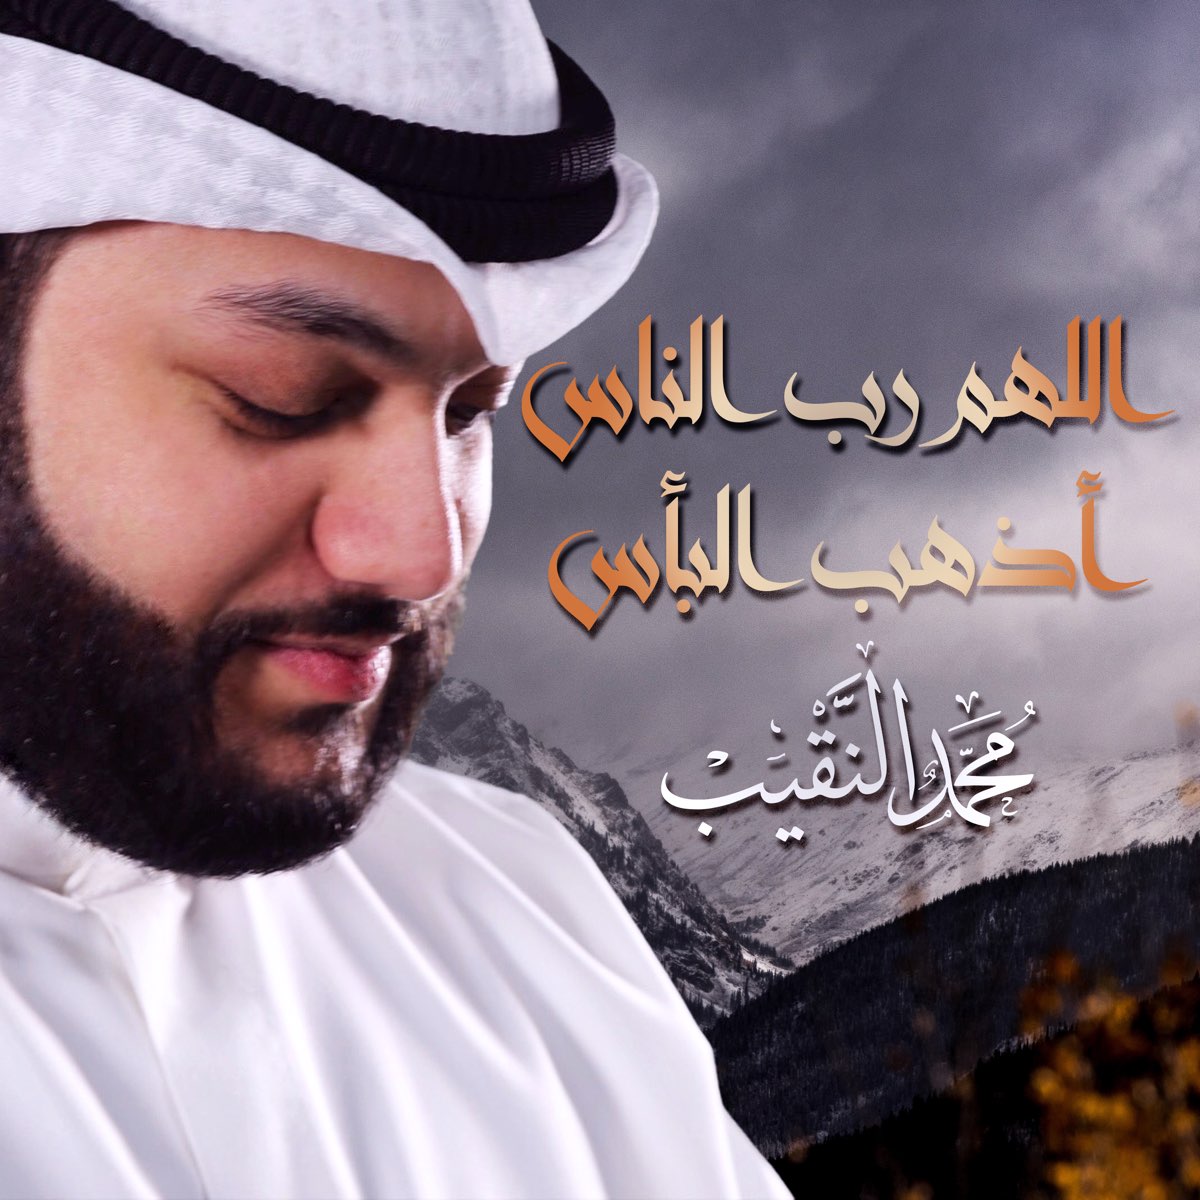 اللهم رب الناس أذهب البأس - Single - Album by محمد النقيب - Apple Music